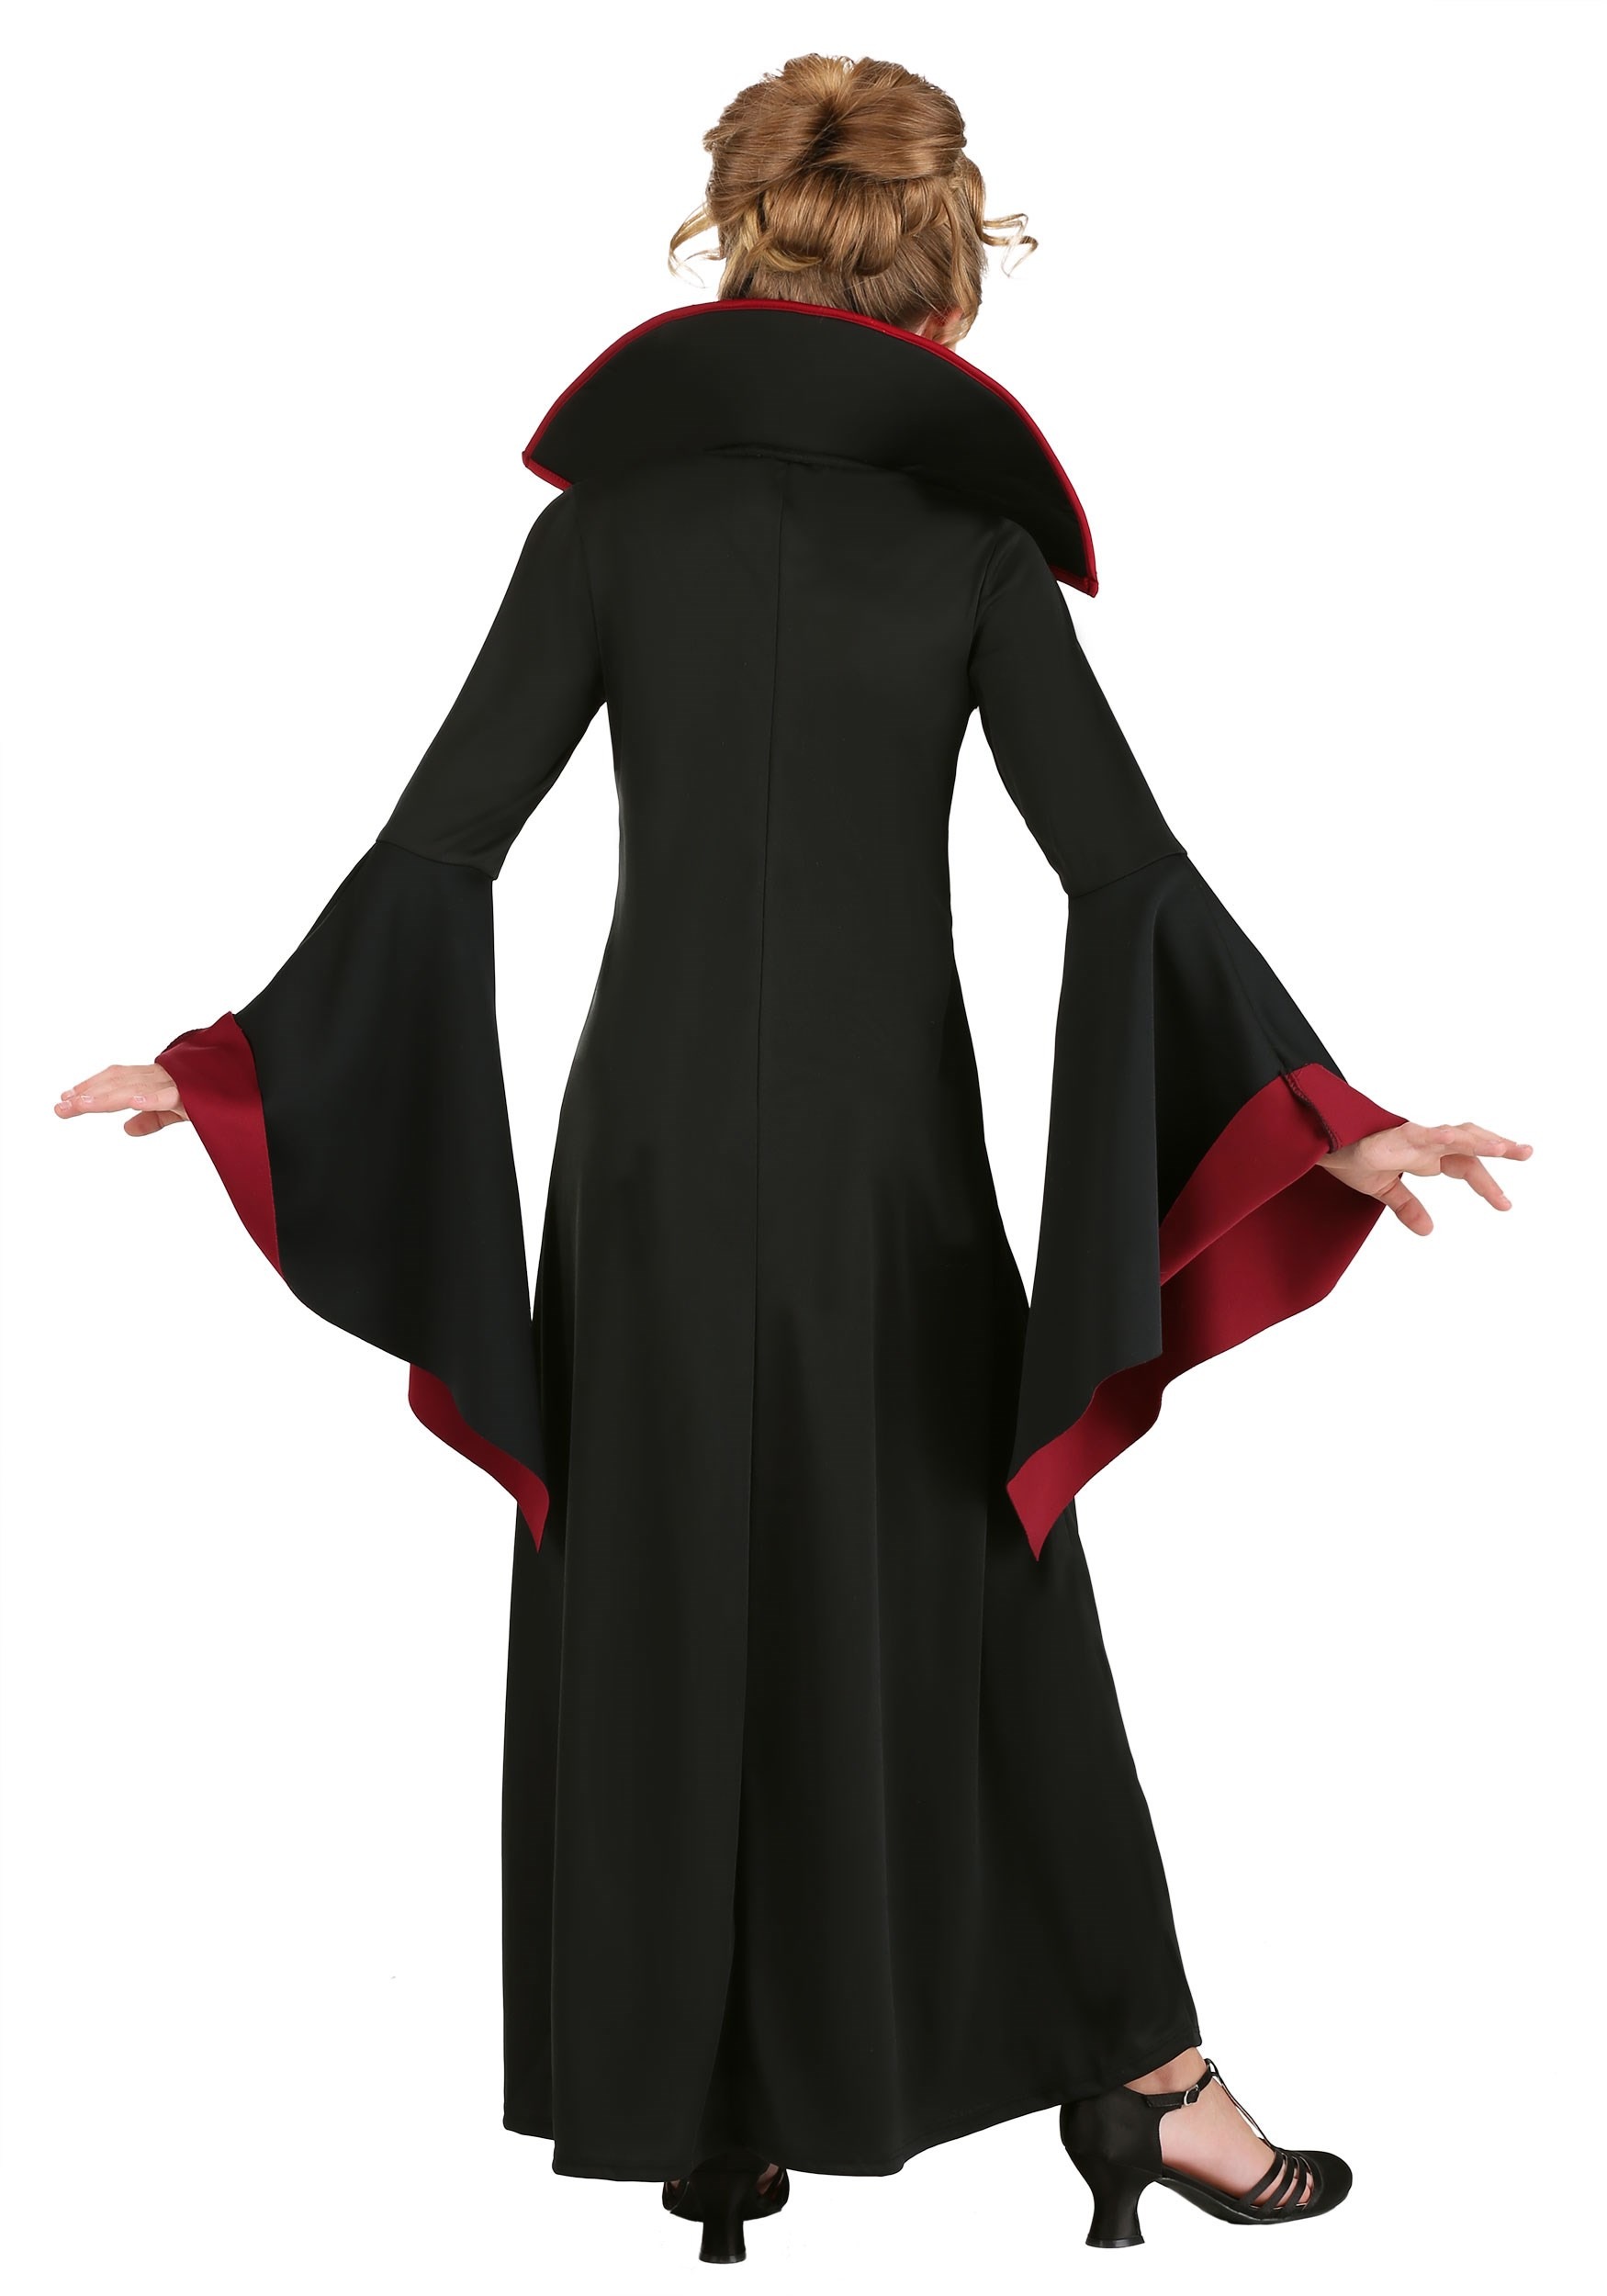 Royal Vampire Costume for Girls